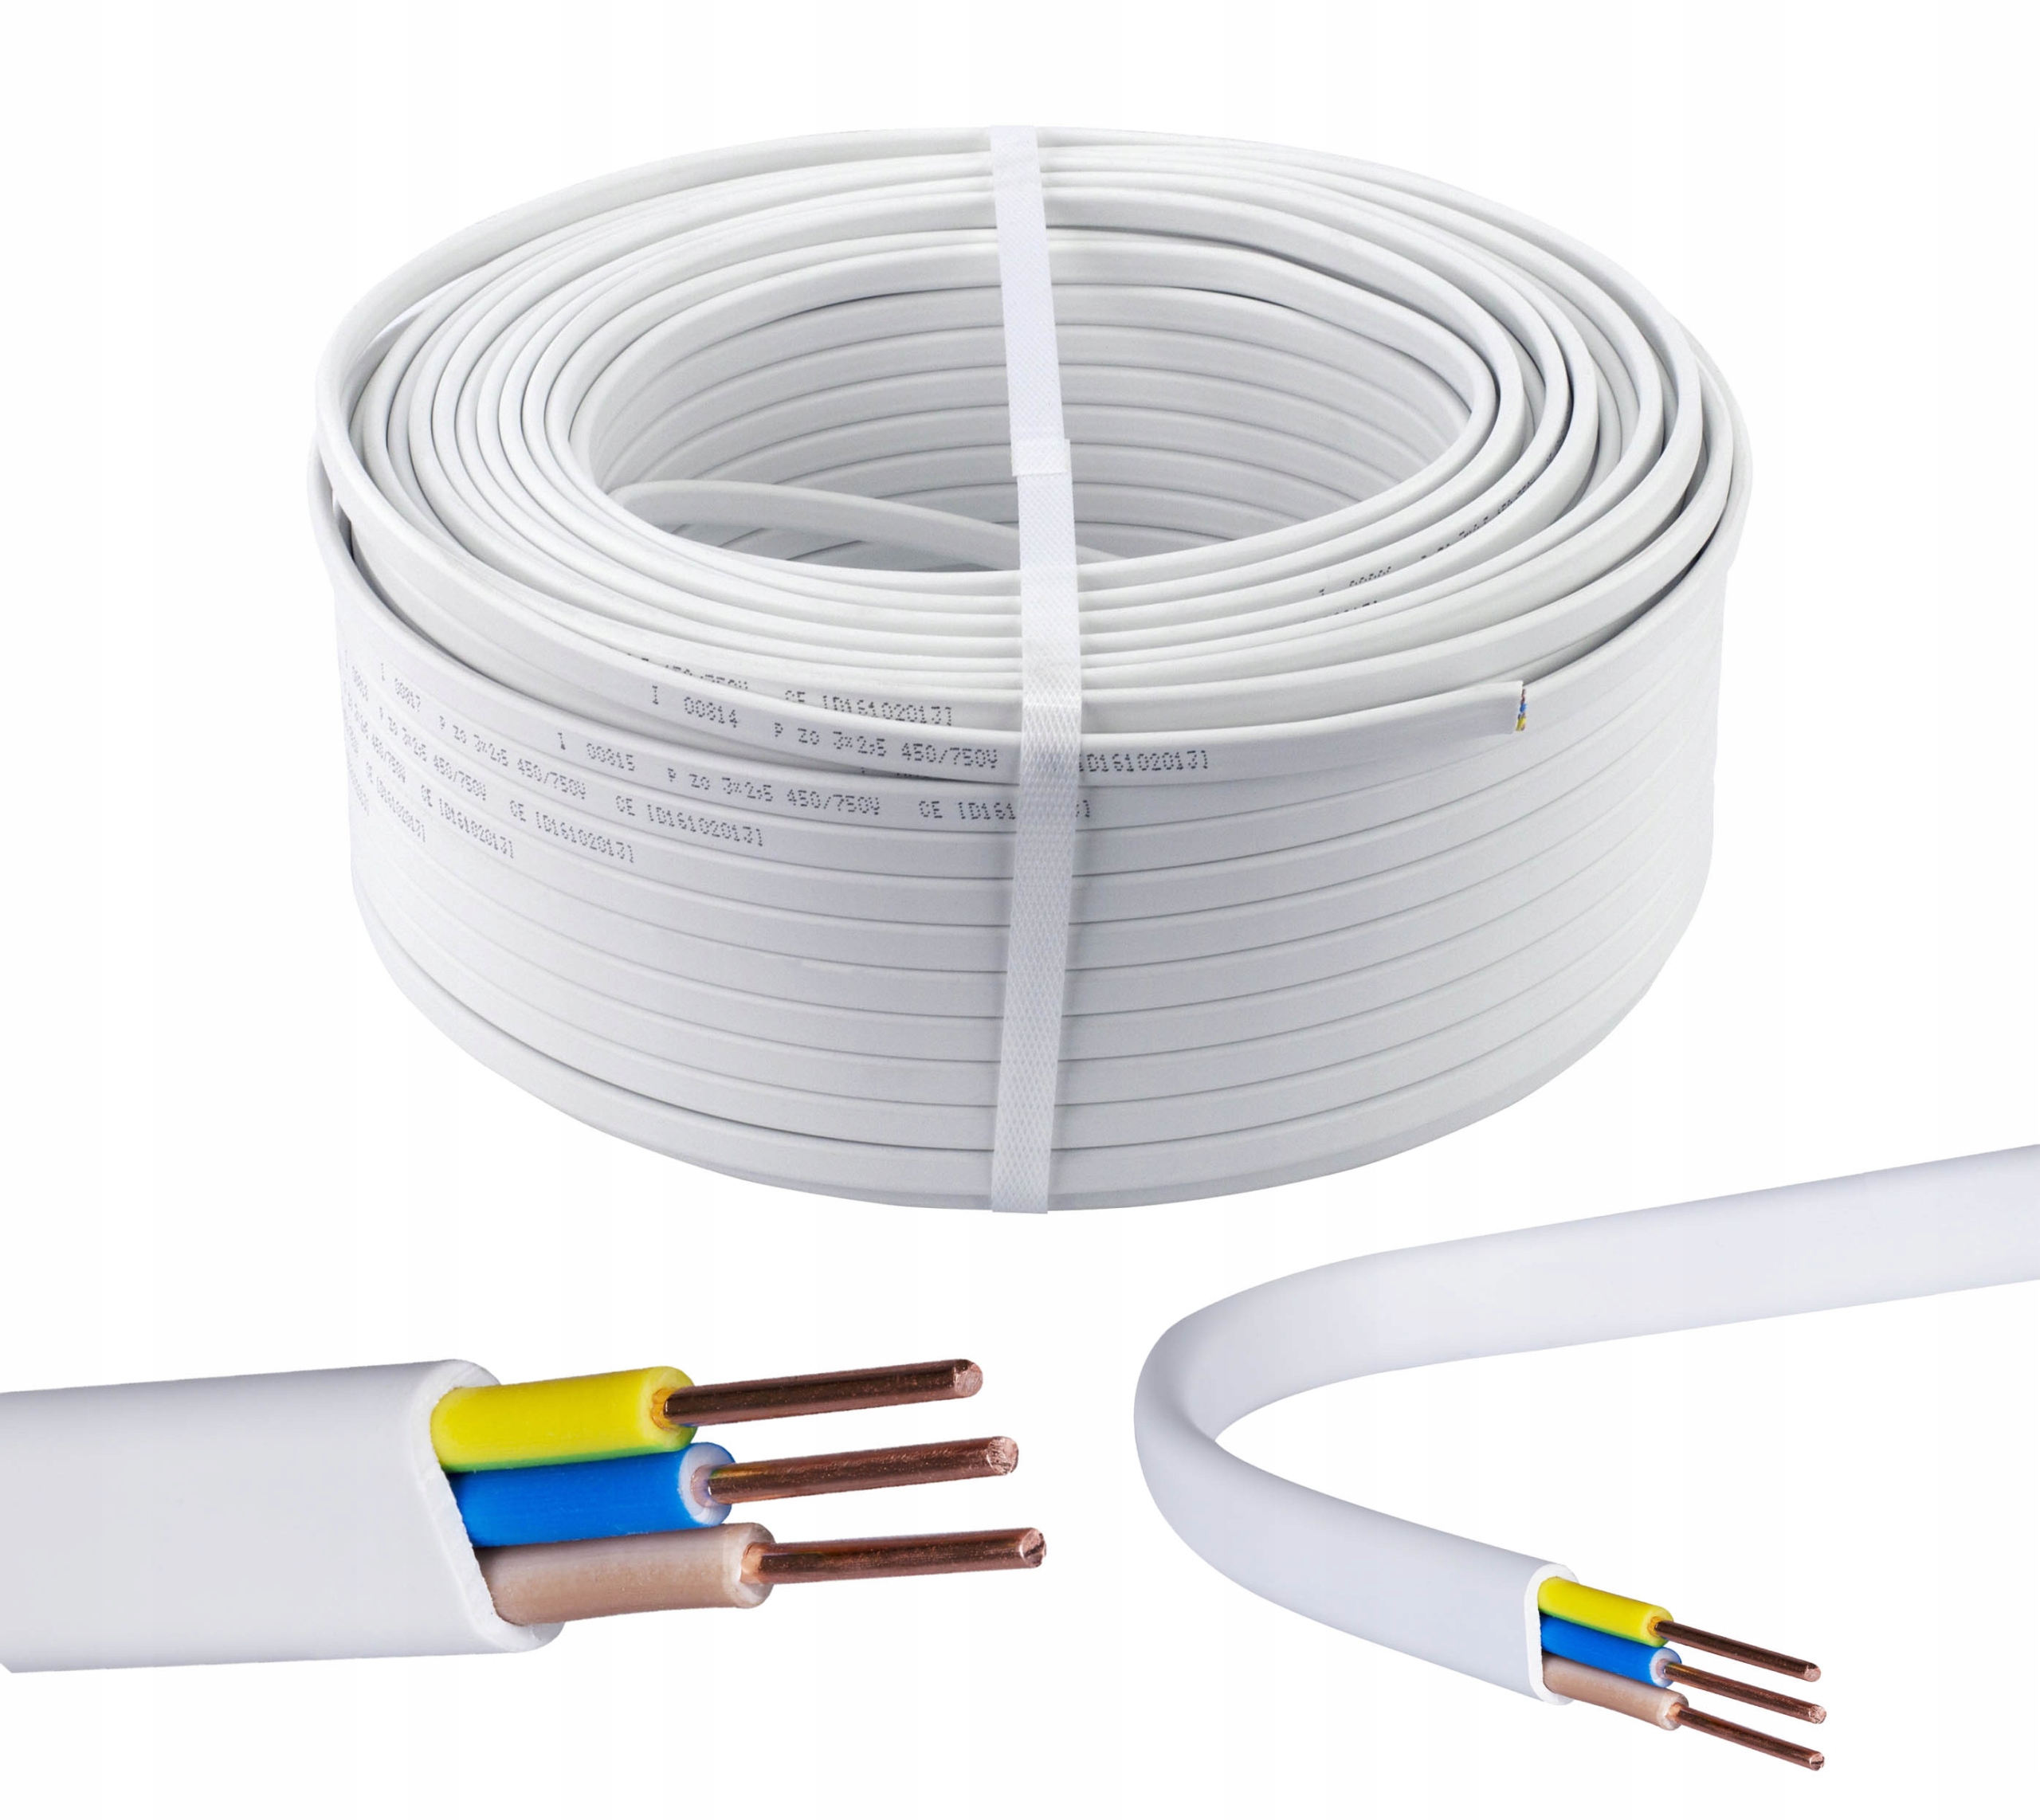 YDY kabel plochý 3x2.5 50m ELEKTROKABEL za 1214 Kč - Allegro